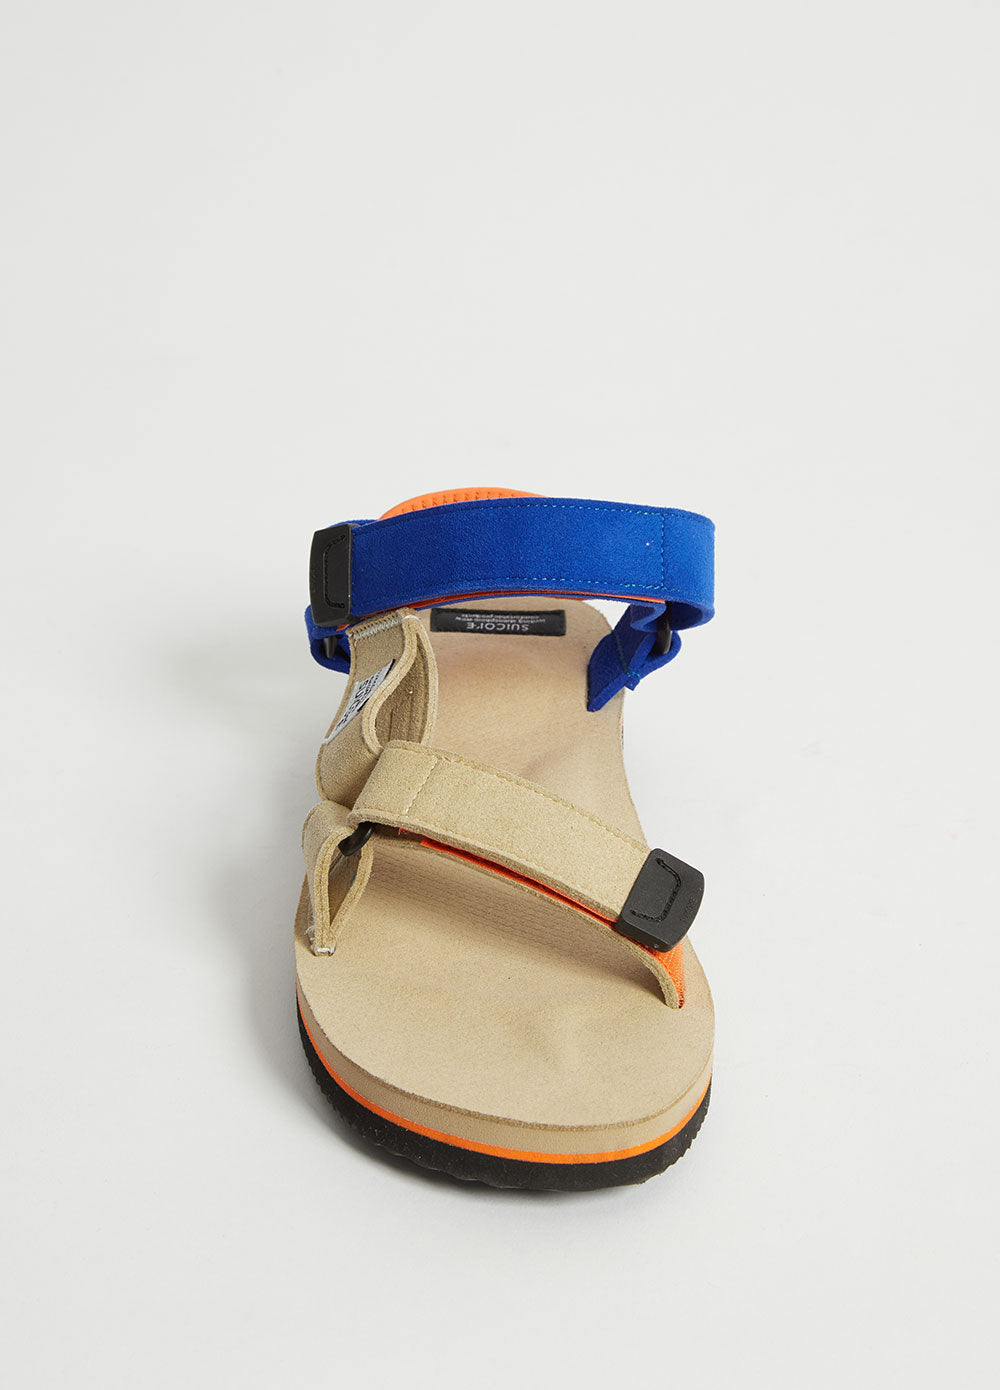 DEPA-ECS Sandals